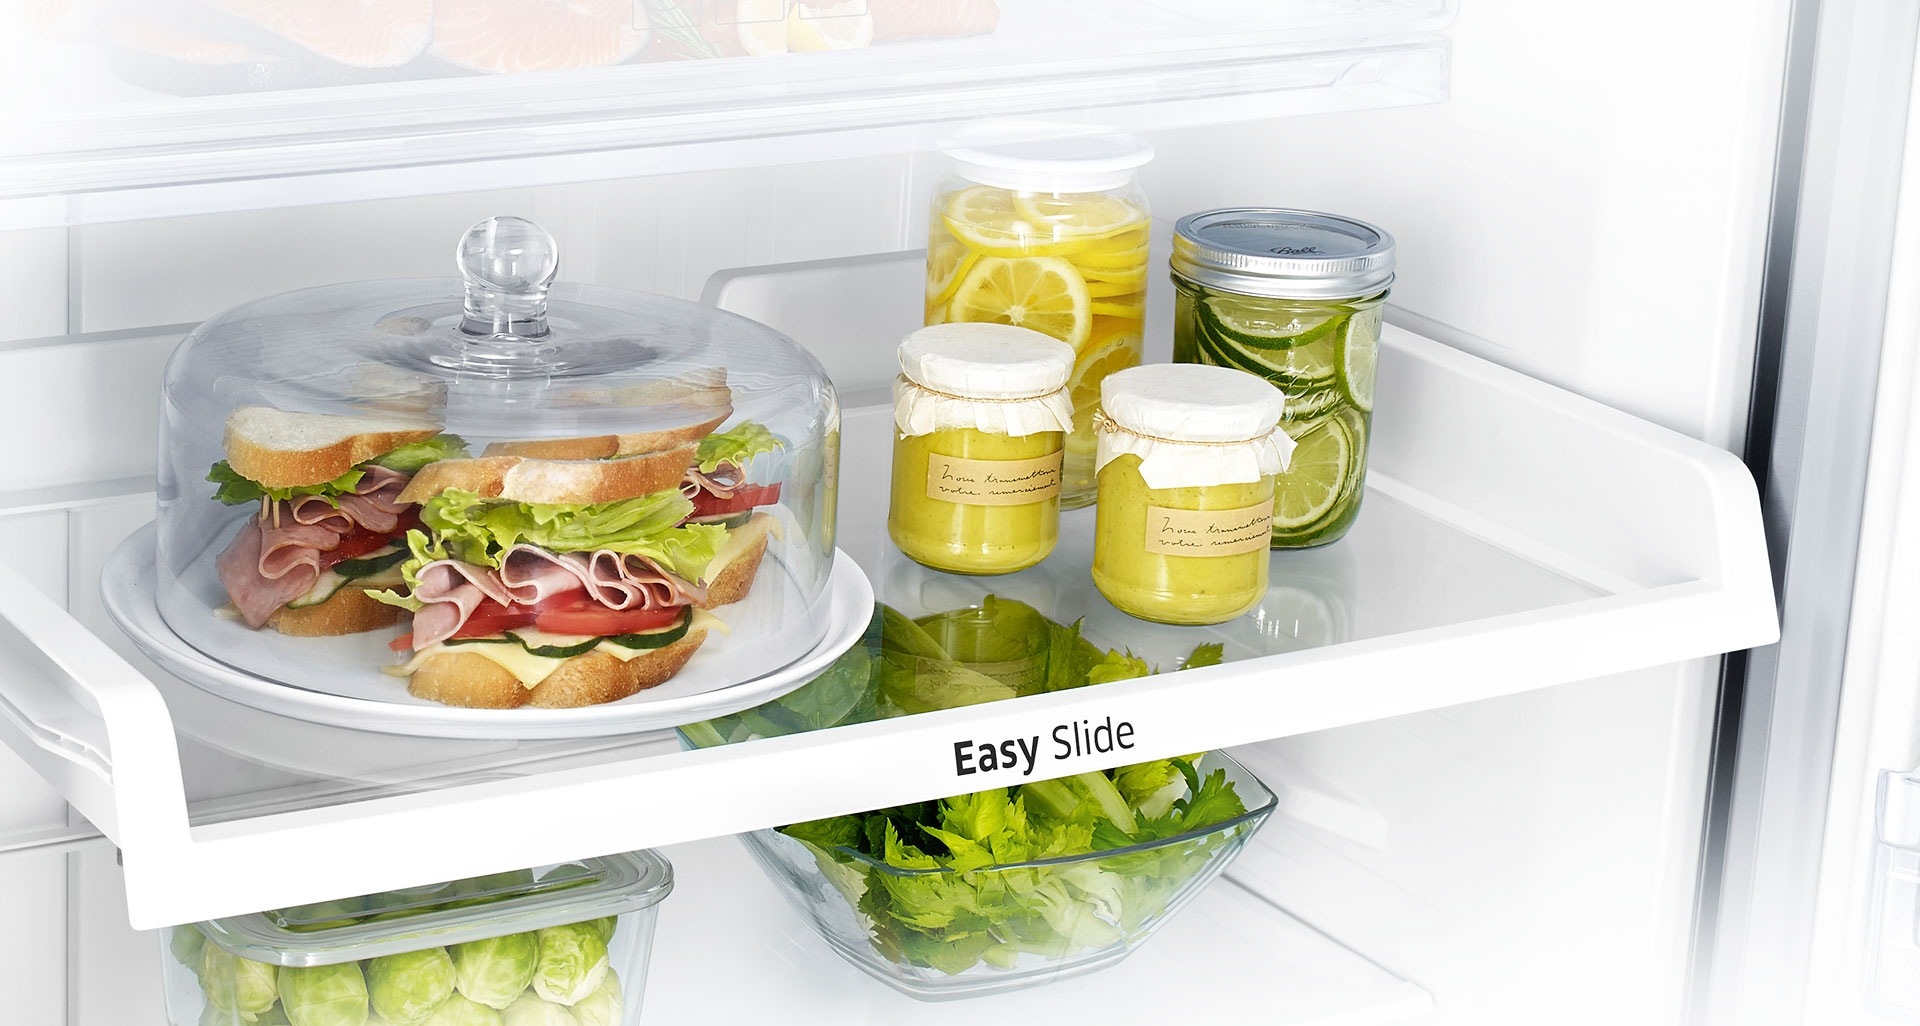 Refrigeradora Samsung Top Freezer - Alimentos de alcance fácil